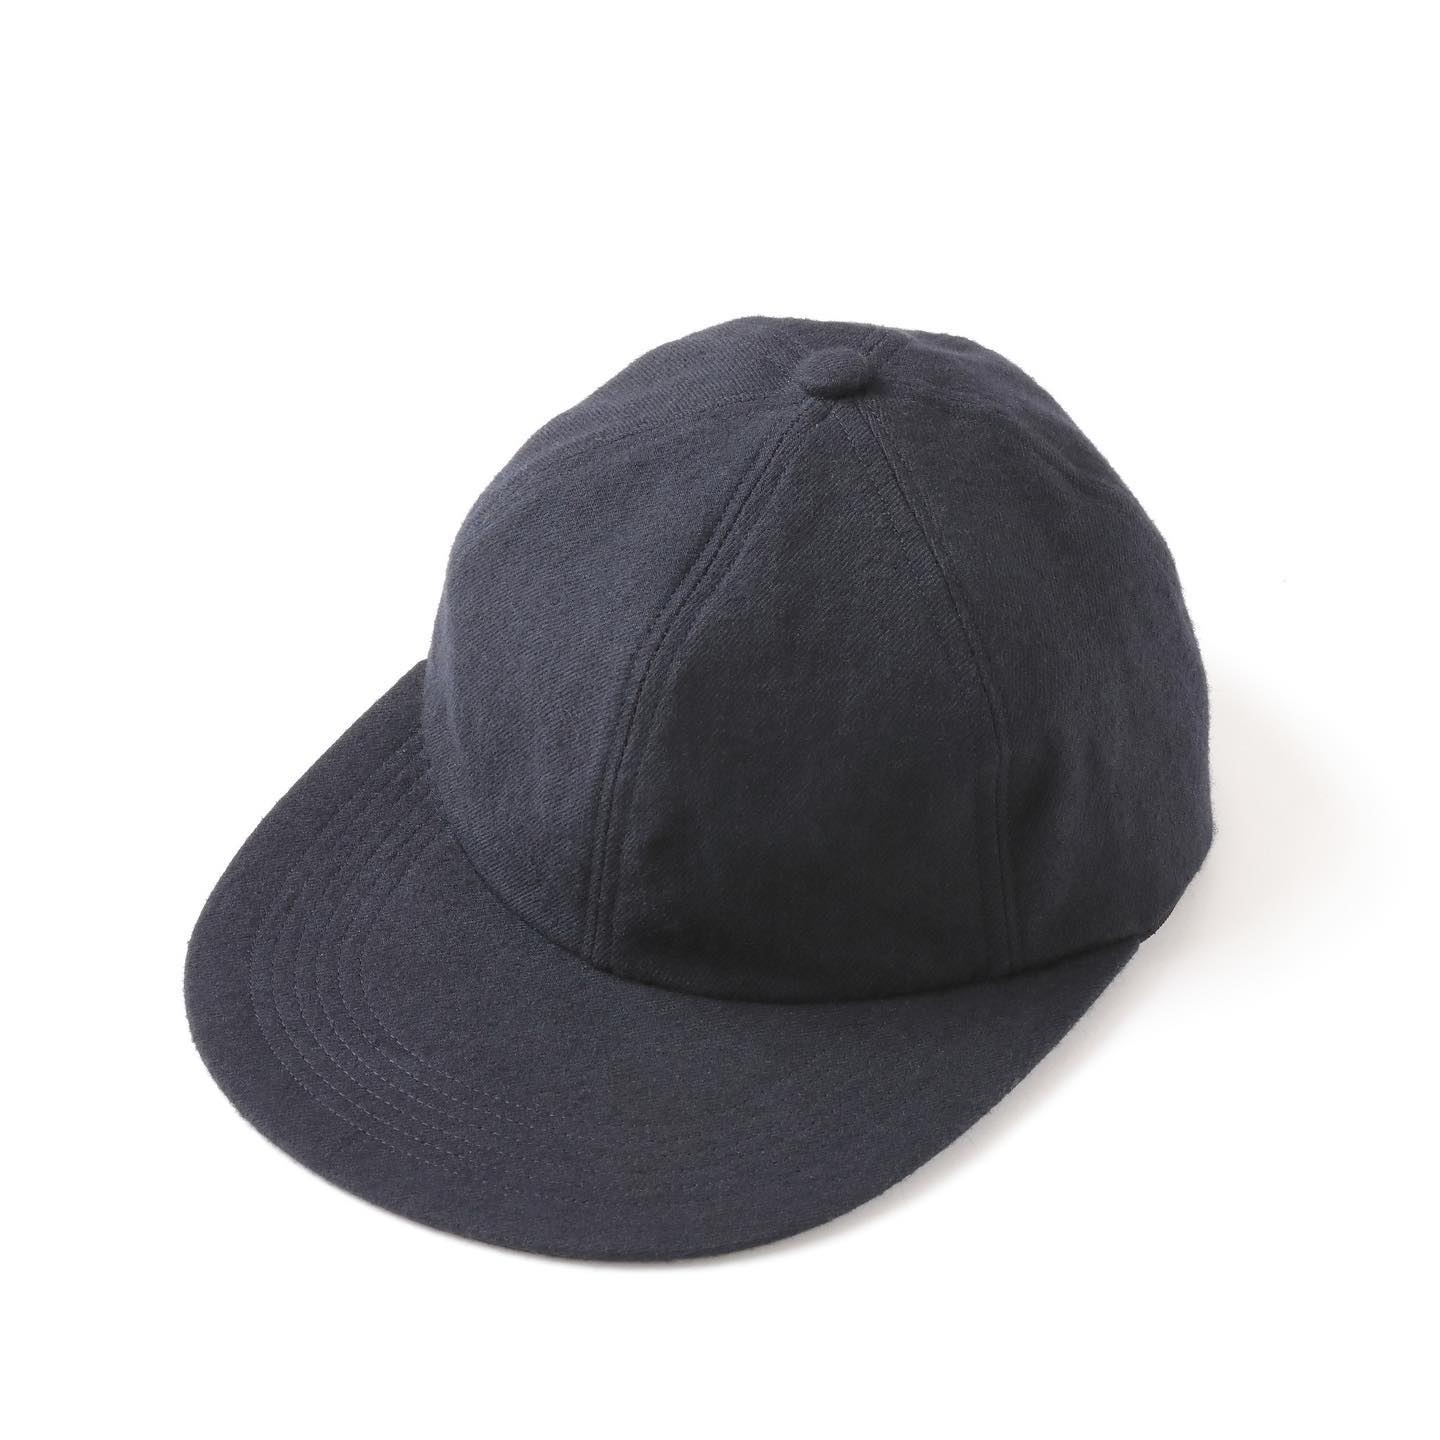 S.F.C SIMPLE CAP